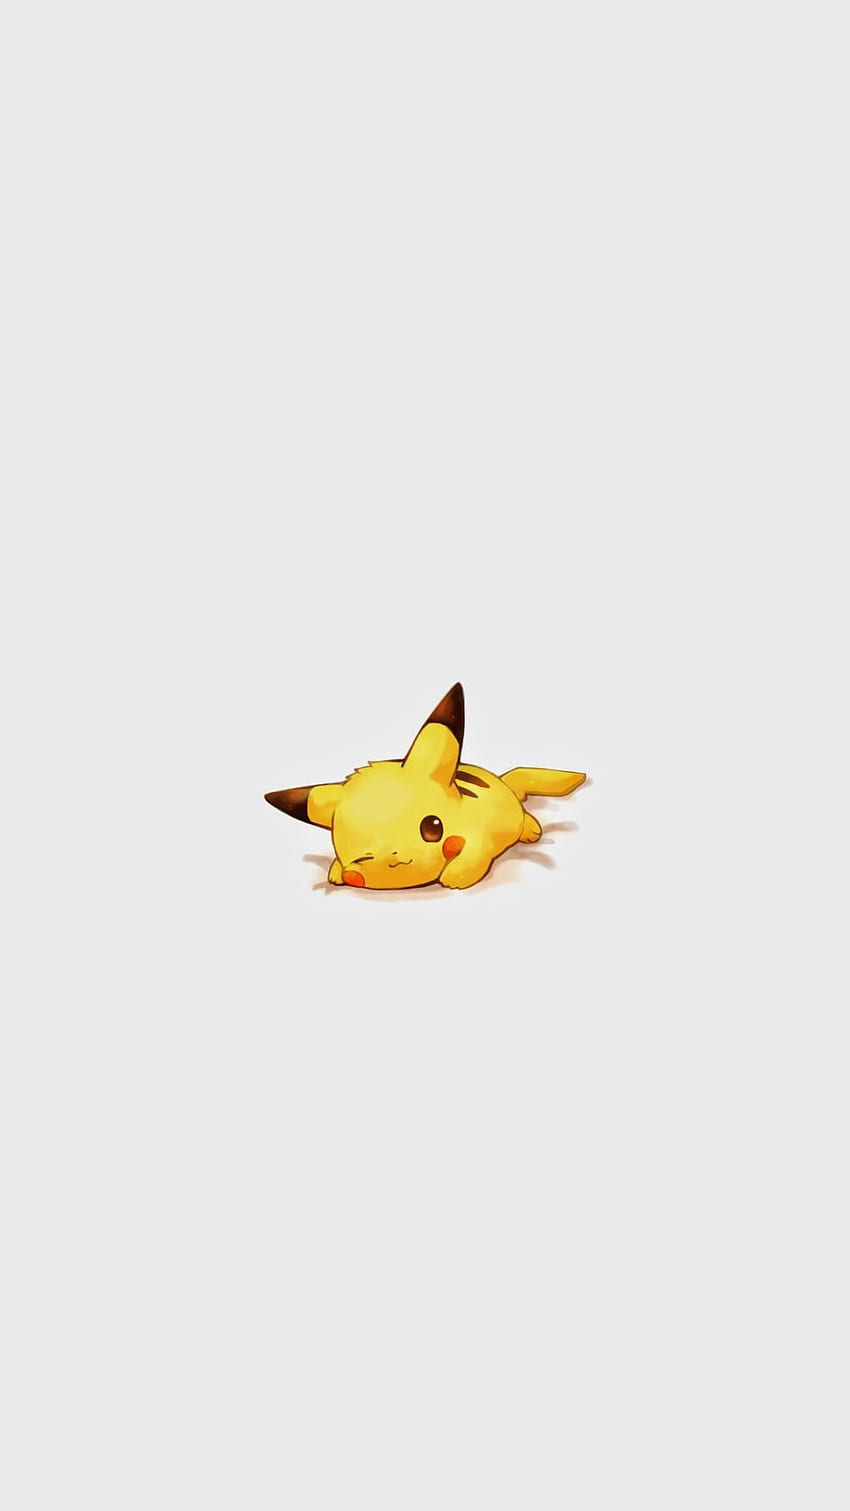 Mignon personnage Pikachu Pokémon iPhone - . iPhoneWalls, Pikachu super mignon Fond d'écran de téléphone HD